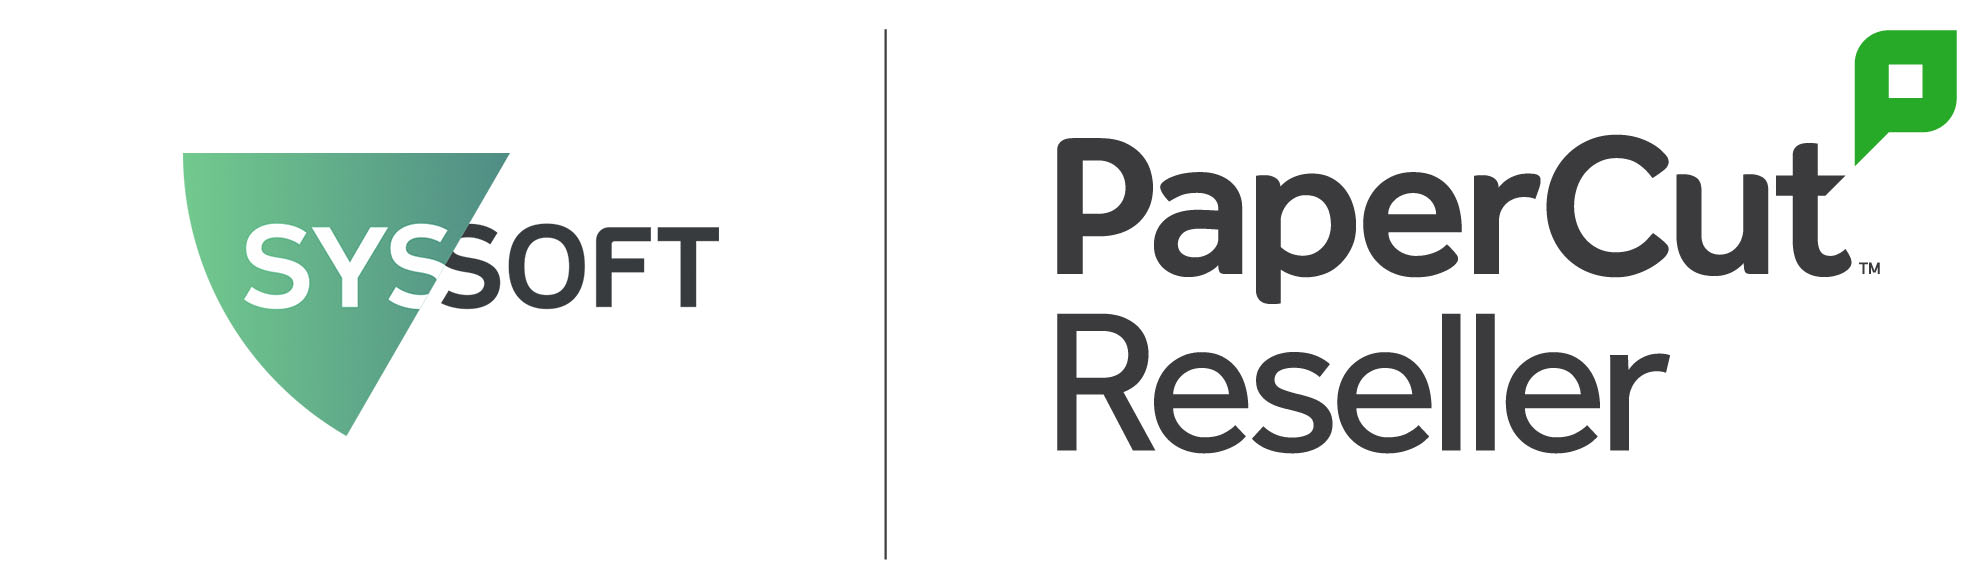 PaperCut MF - Small Business Bundle